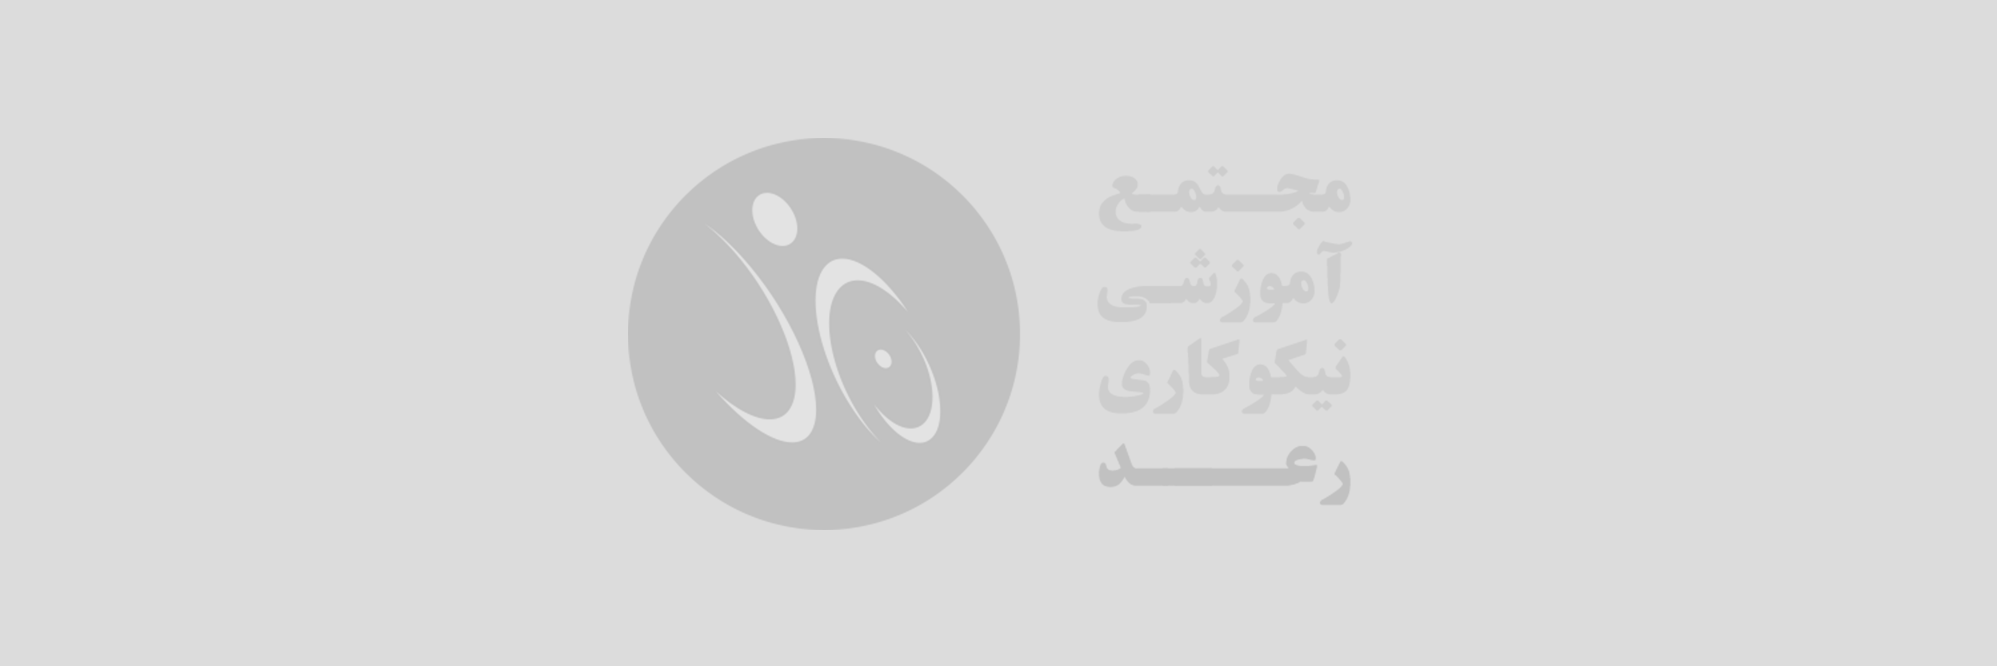 نشست کارآفرینان استان تهران در مجتمع آموزشی نیکوکاری رعد